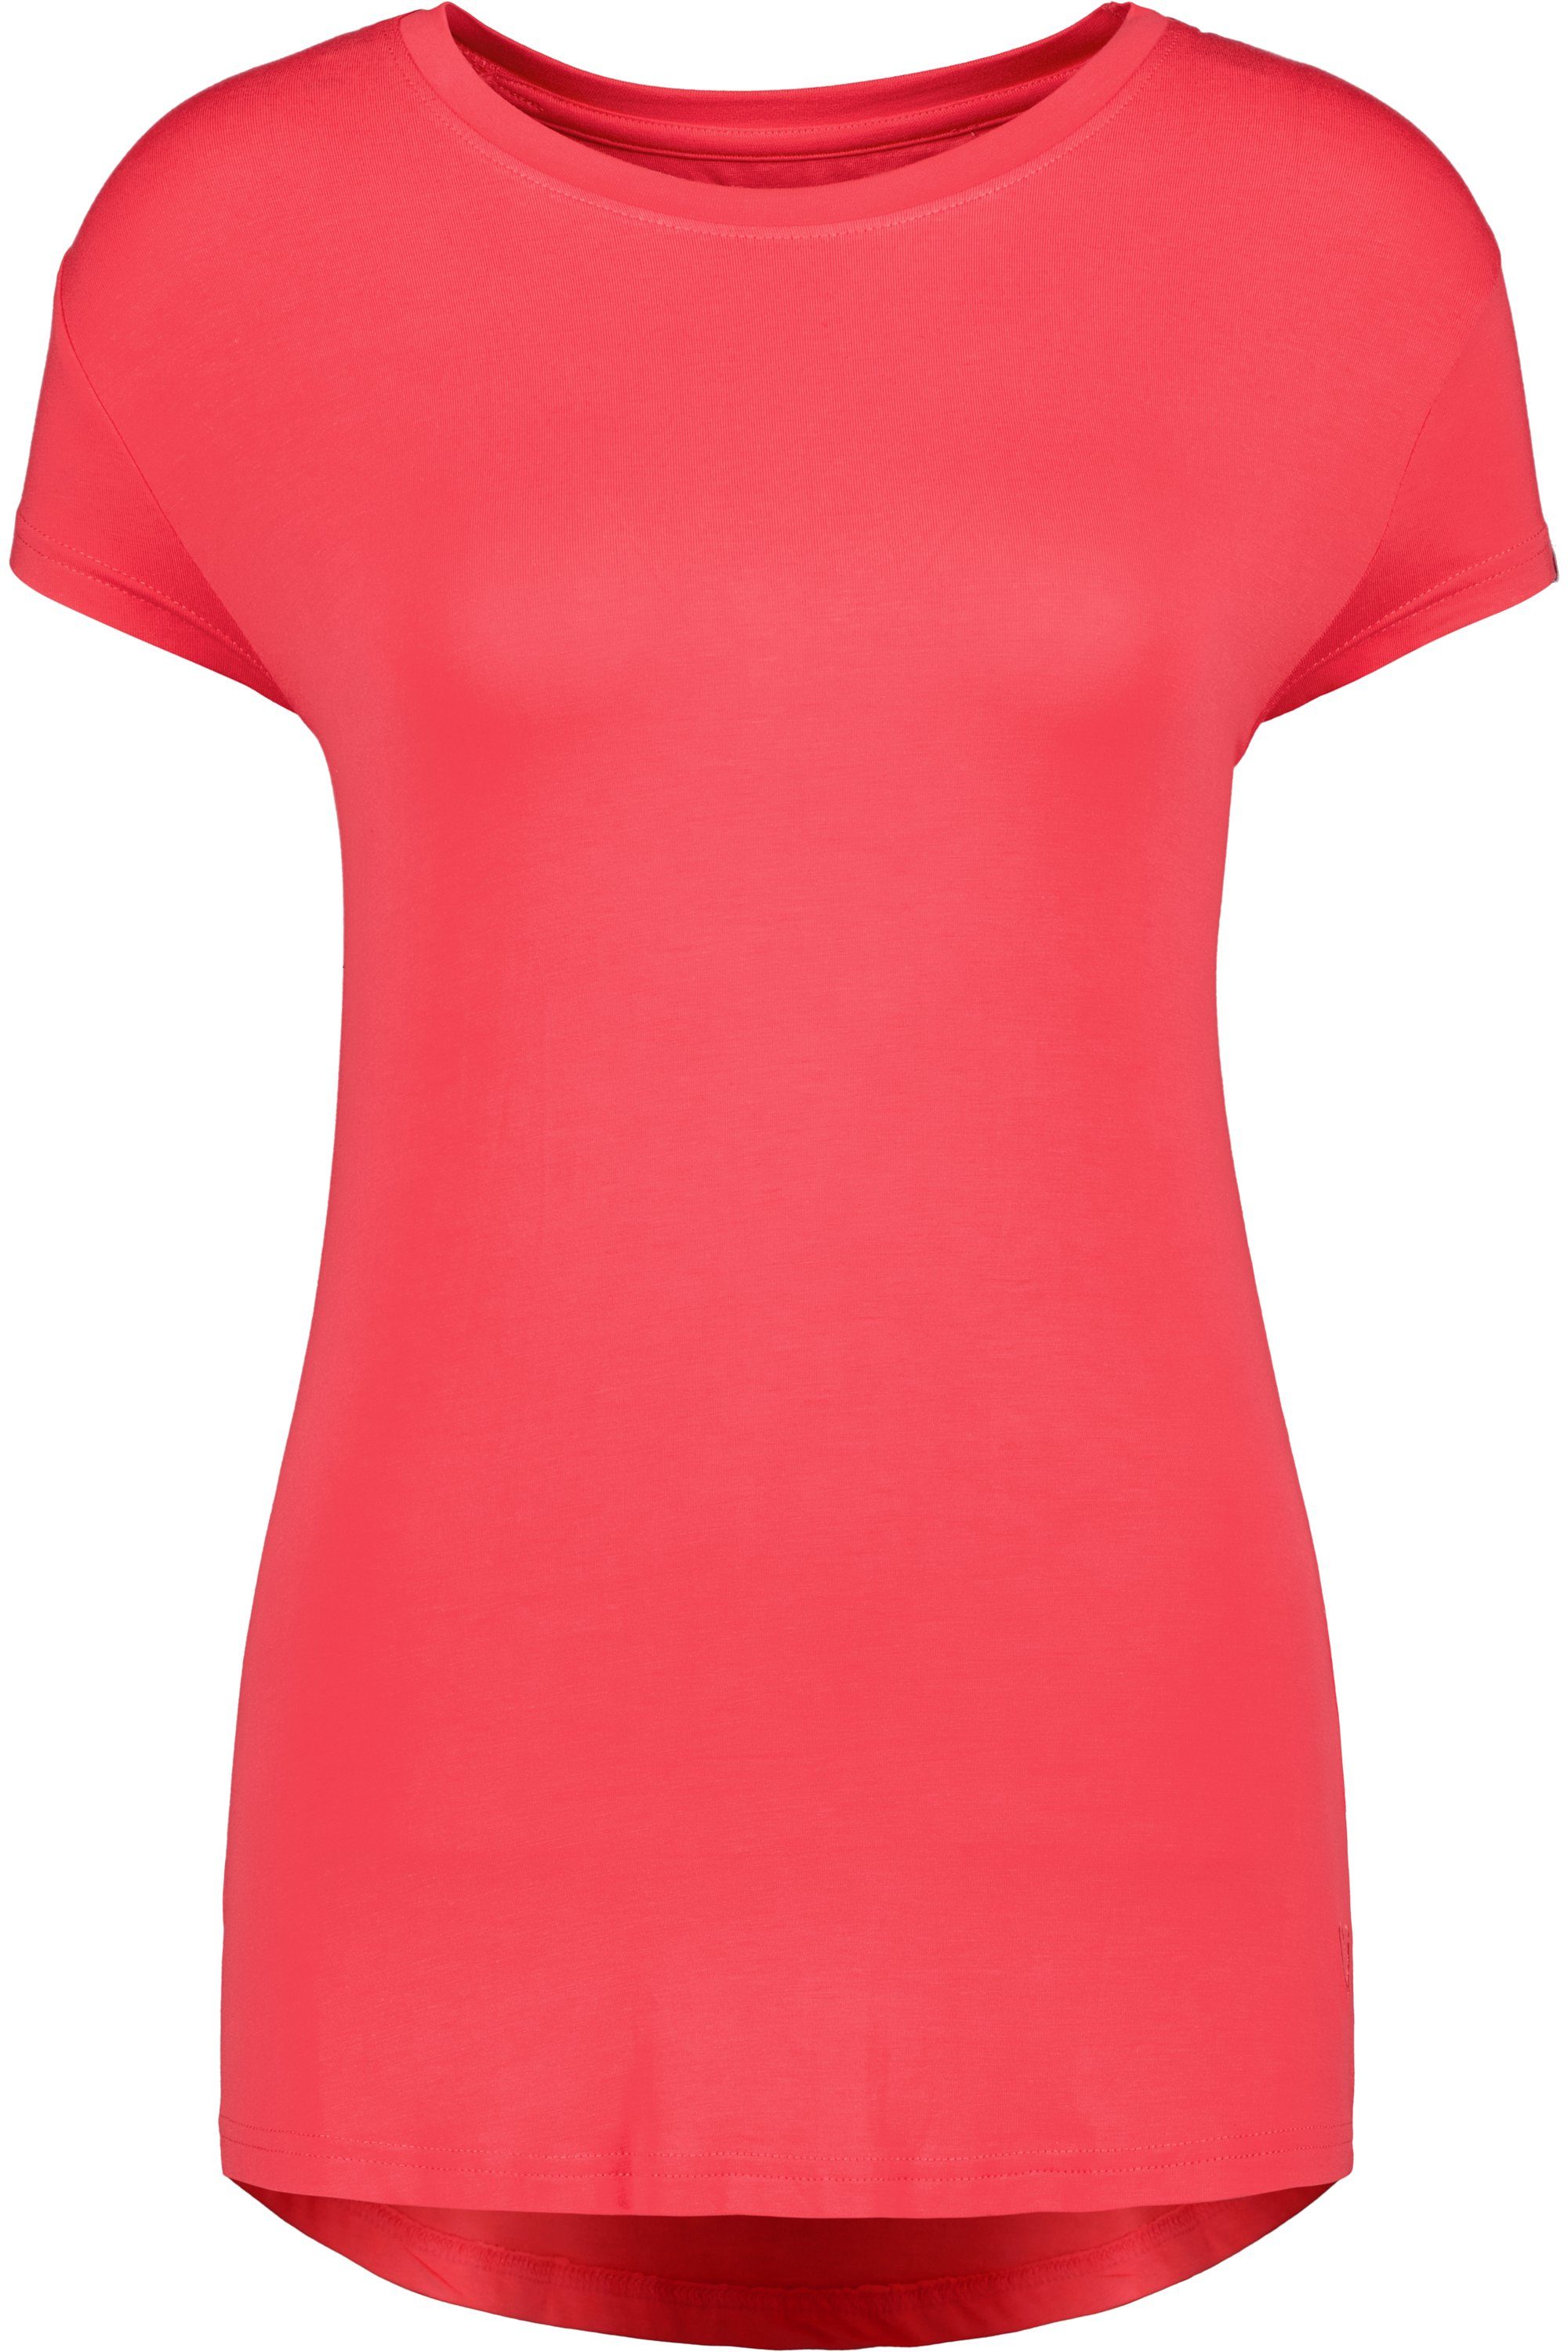 Alife Shirt Kurzarmshirt, Shirt coral & Kickin Rundhalsshirt A MimmyAK Damen